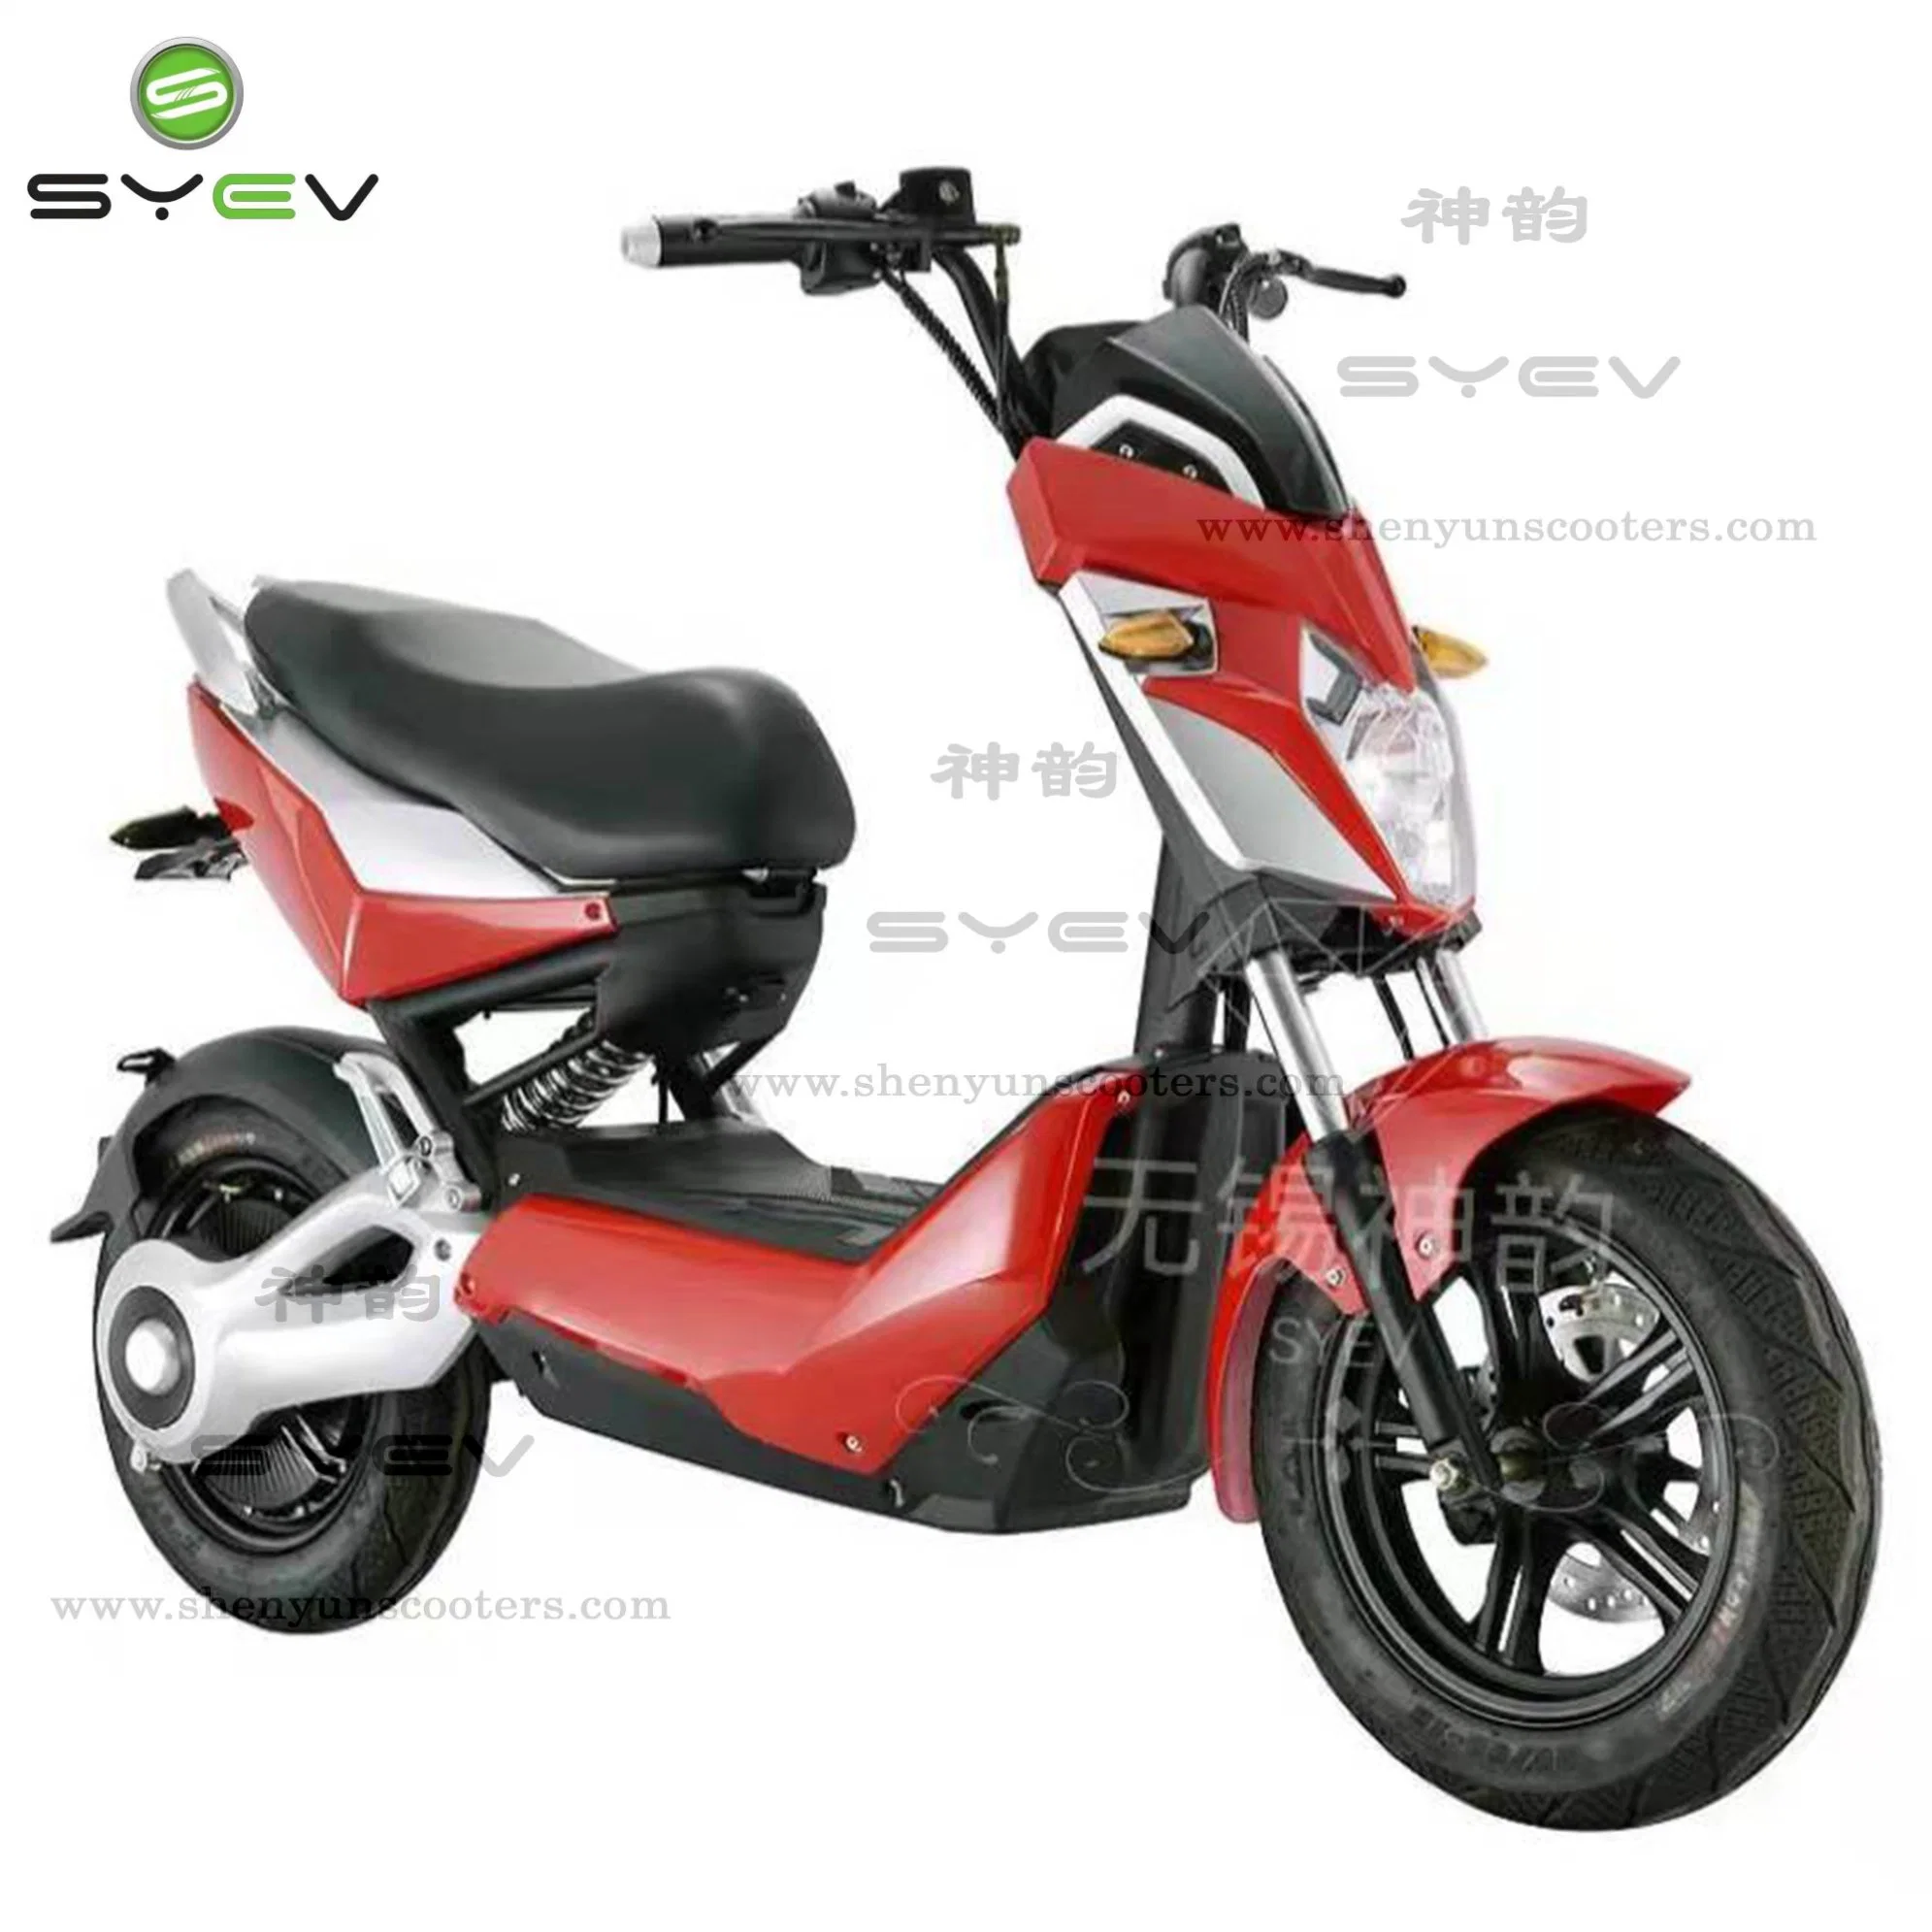 Moto moto moto moto électrique 3kw course moto électrique pour adultes Moto Scottish terrier électronique 1 200 W 1 500 W 60 V.